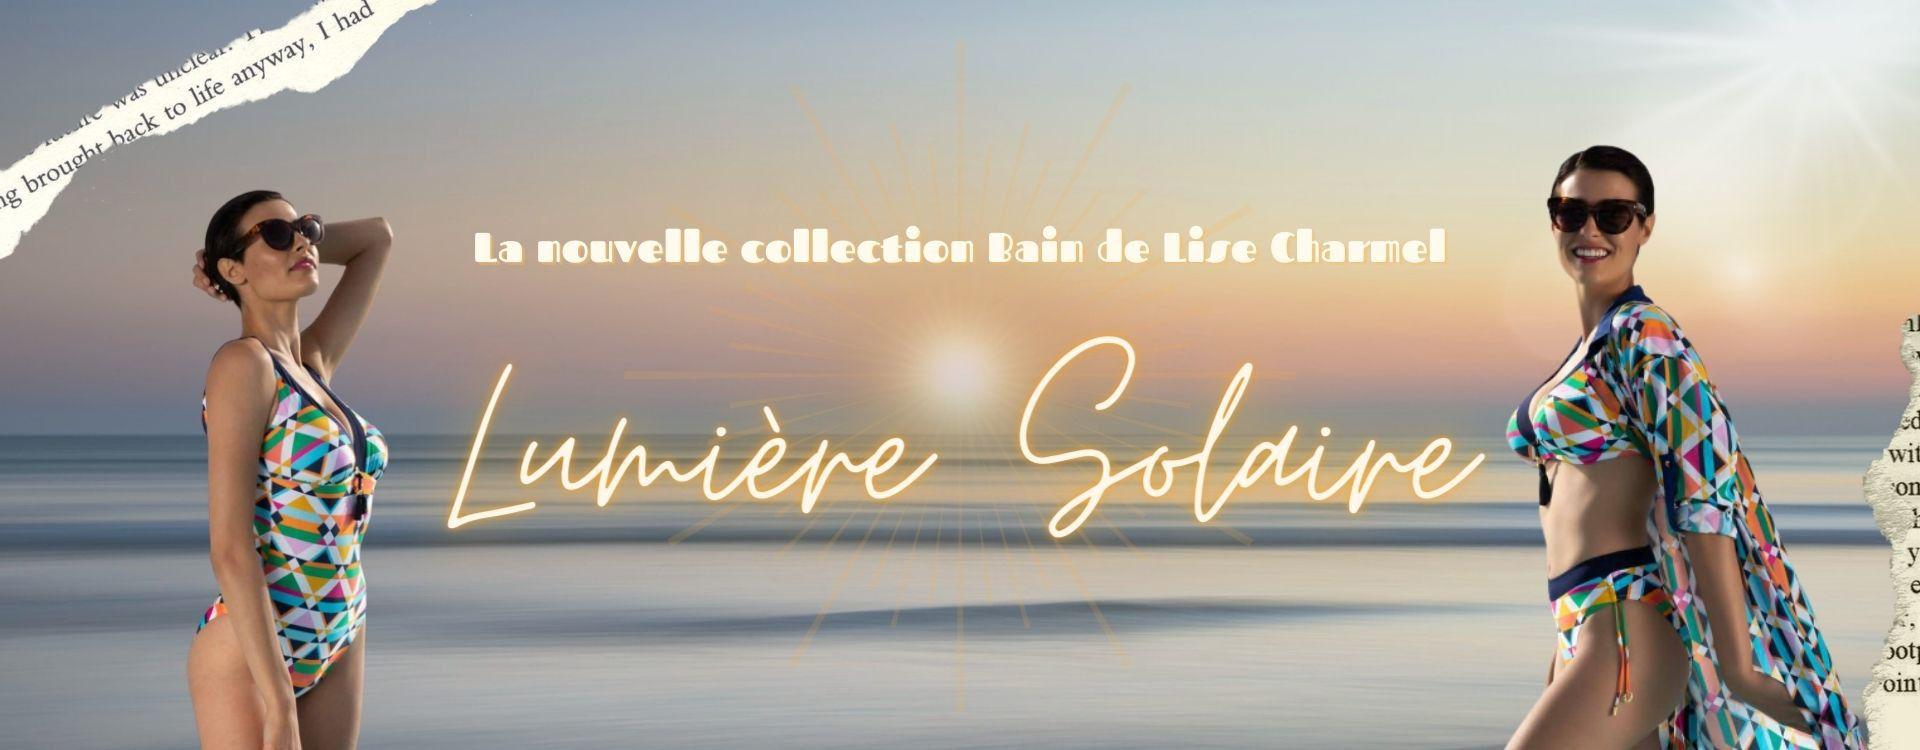 La nouvelle collection bain de Lise Charmel : Lumière Solaire